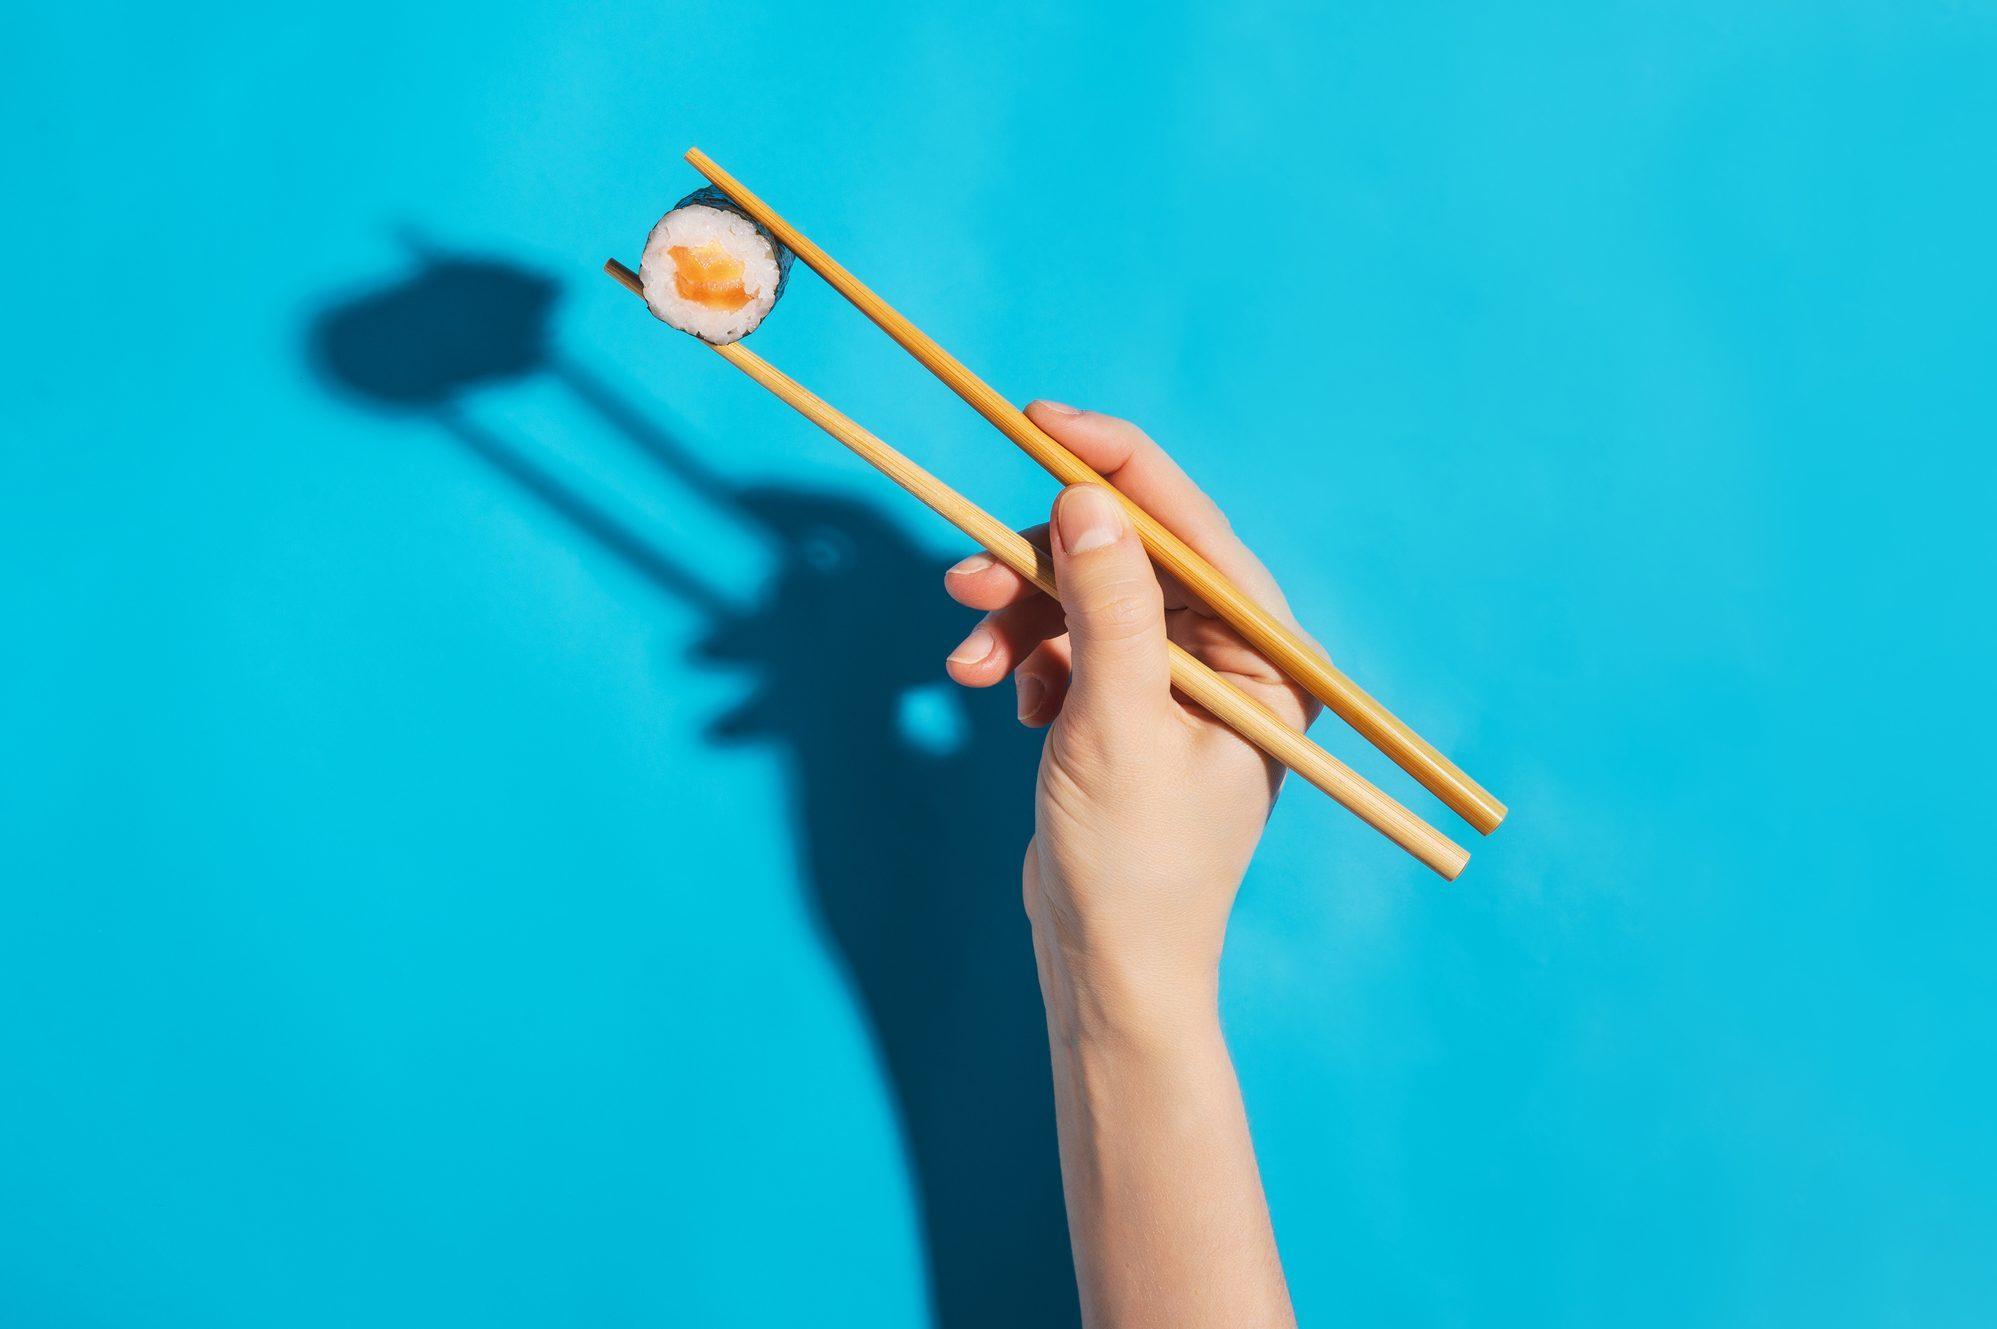 Children's Bamboo Chopsticks - For Small Hands